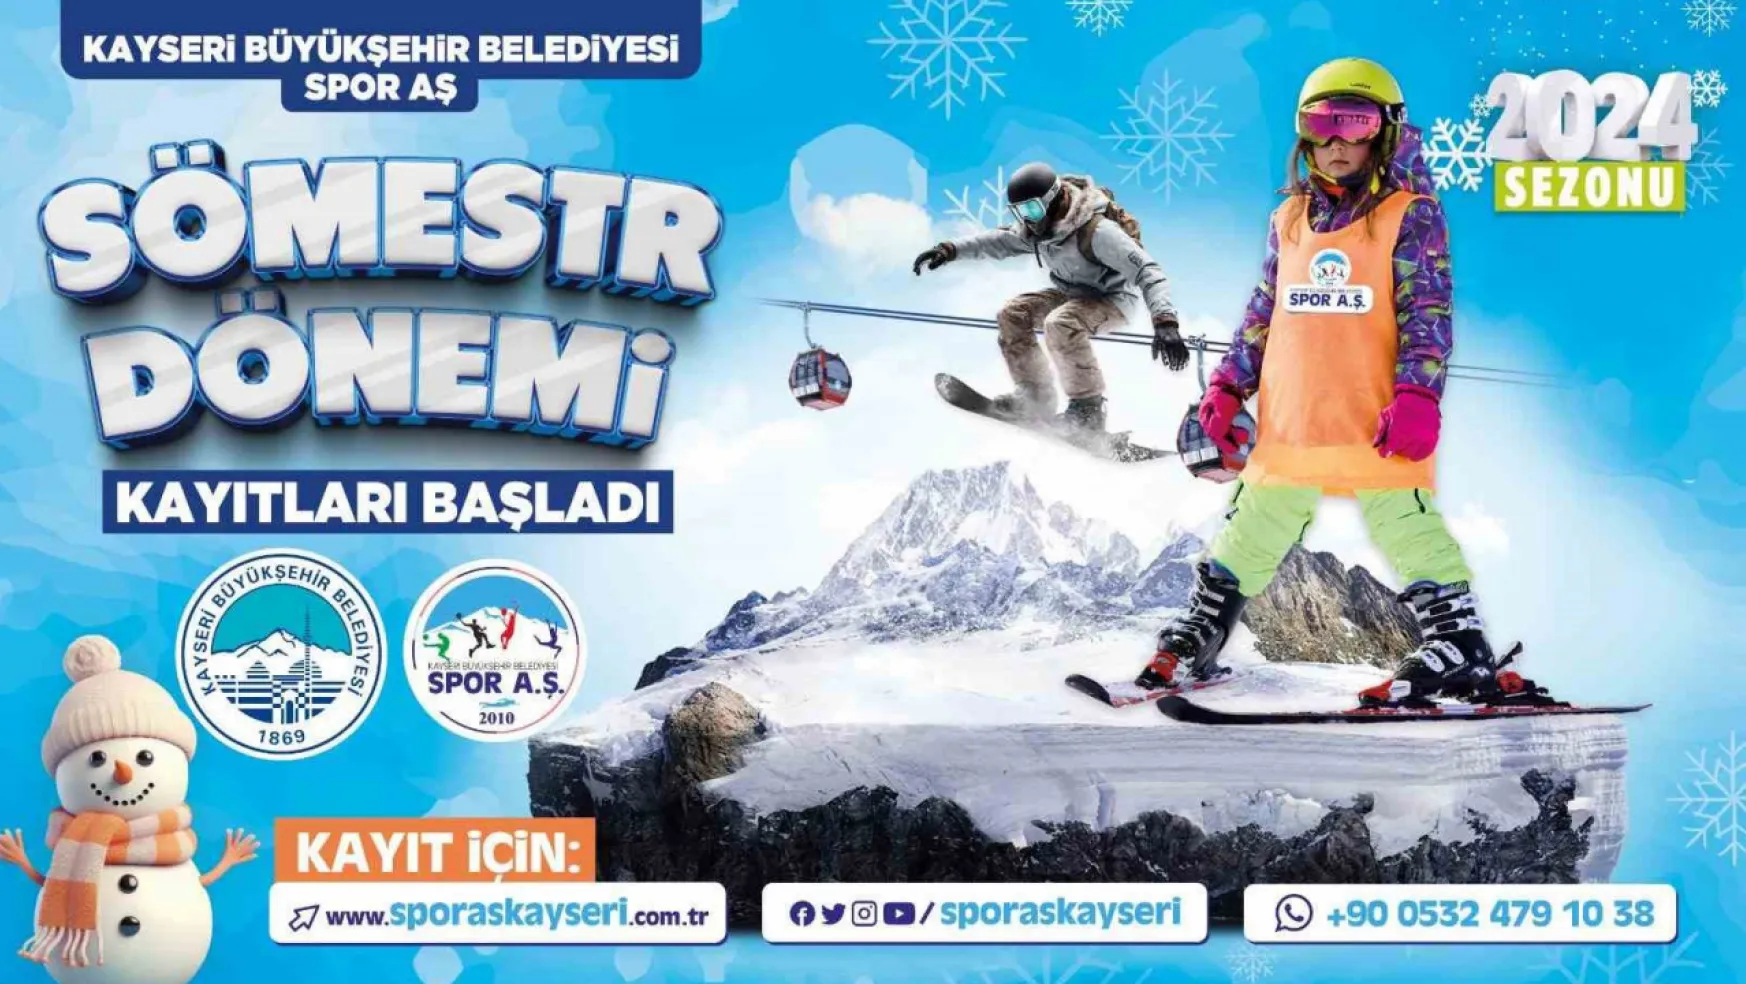 Büyükşehir Spor A.Ş.'den Kayak Okulu'nda 'sömestr' jesti